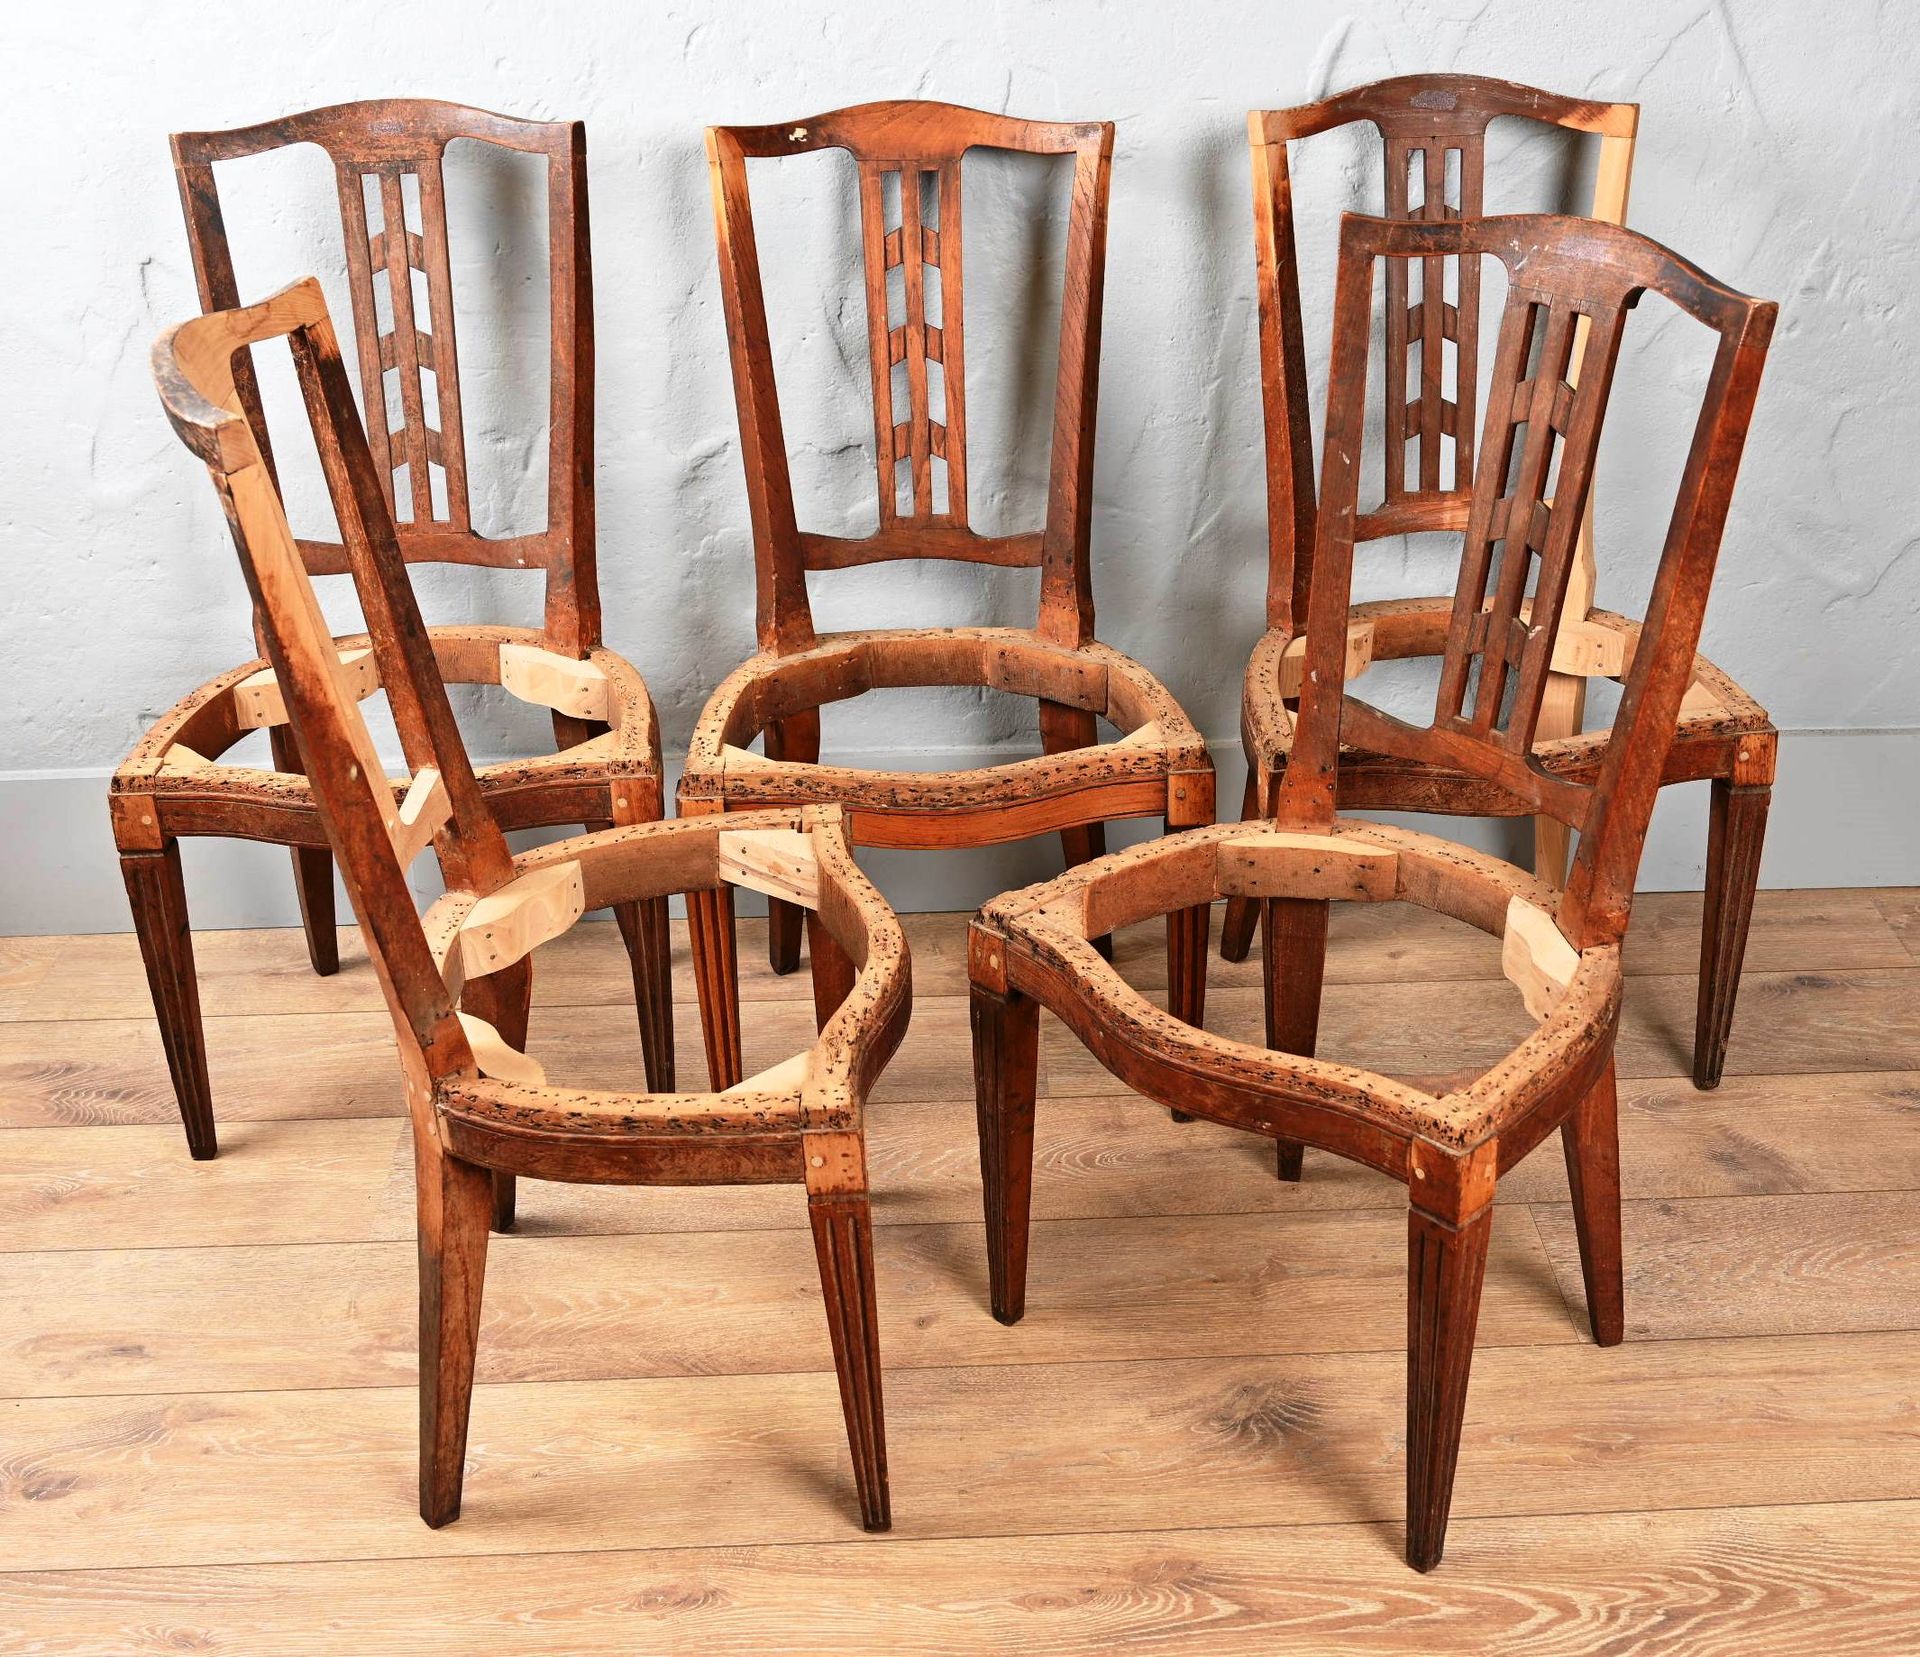 Suite de 5 chaises de style Louis XVI. Suite de 5 chaises de style Louis XVI.

R&hellip;